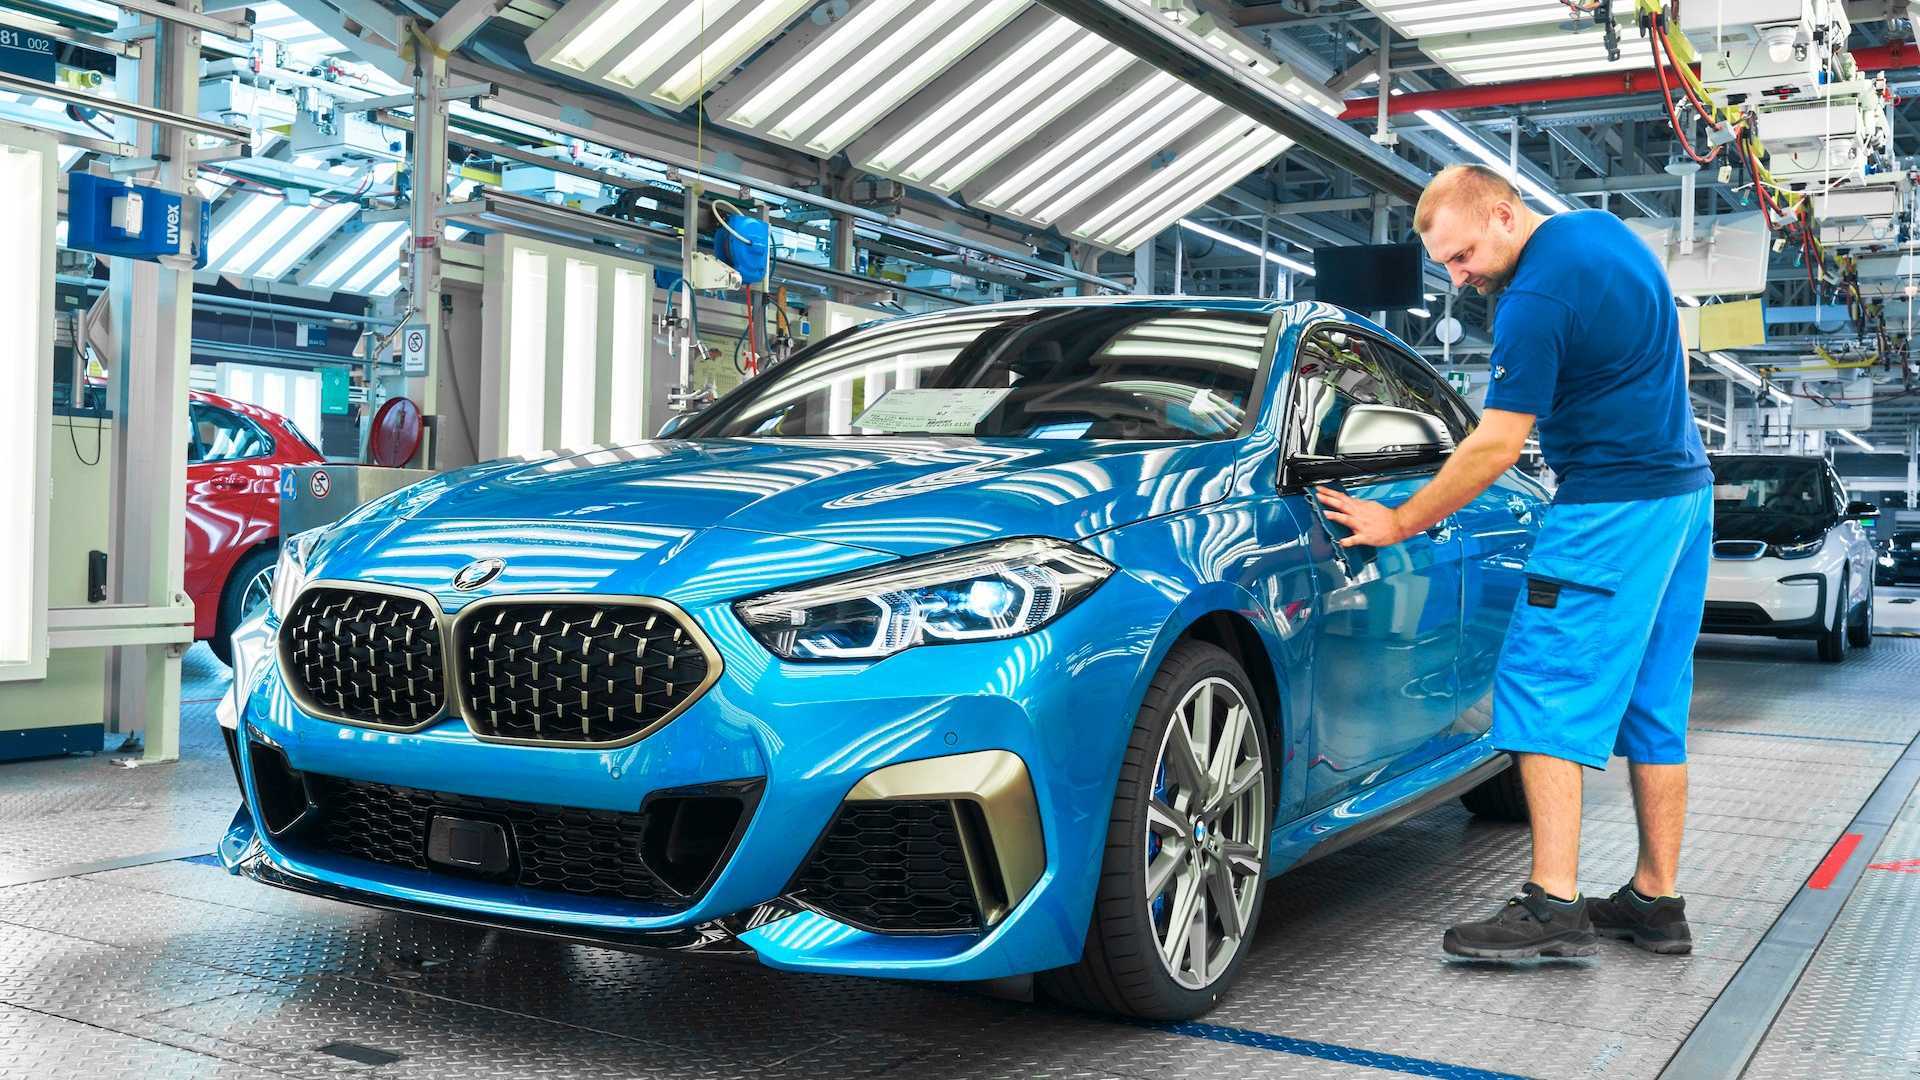 BMW сократит производственные расходы на четверть